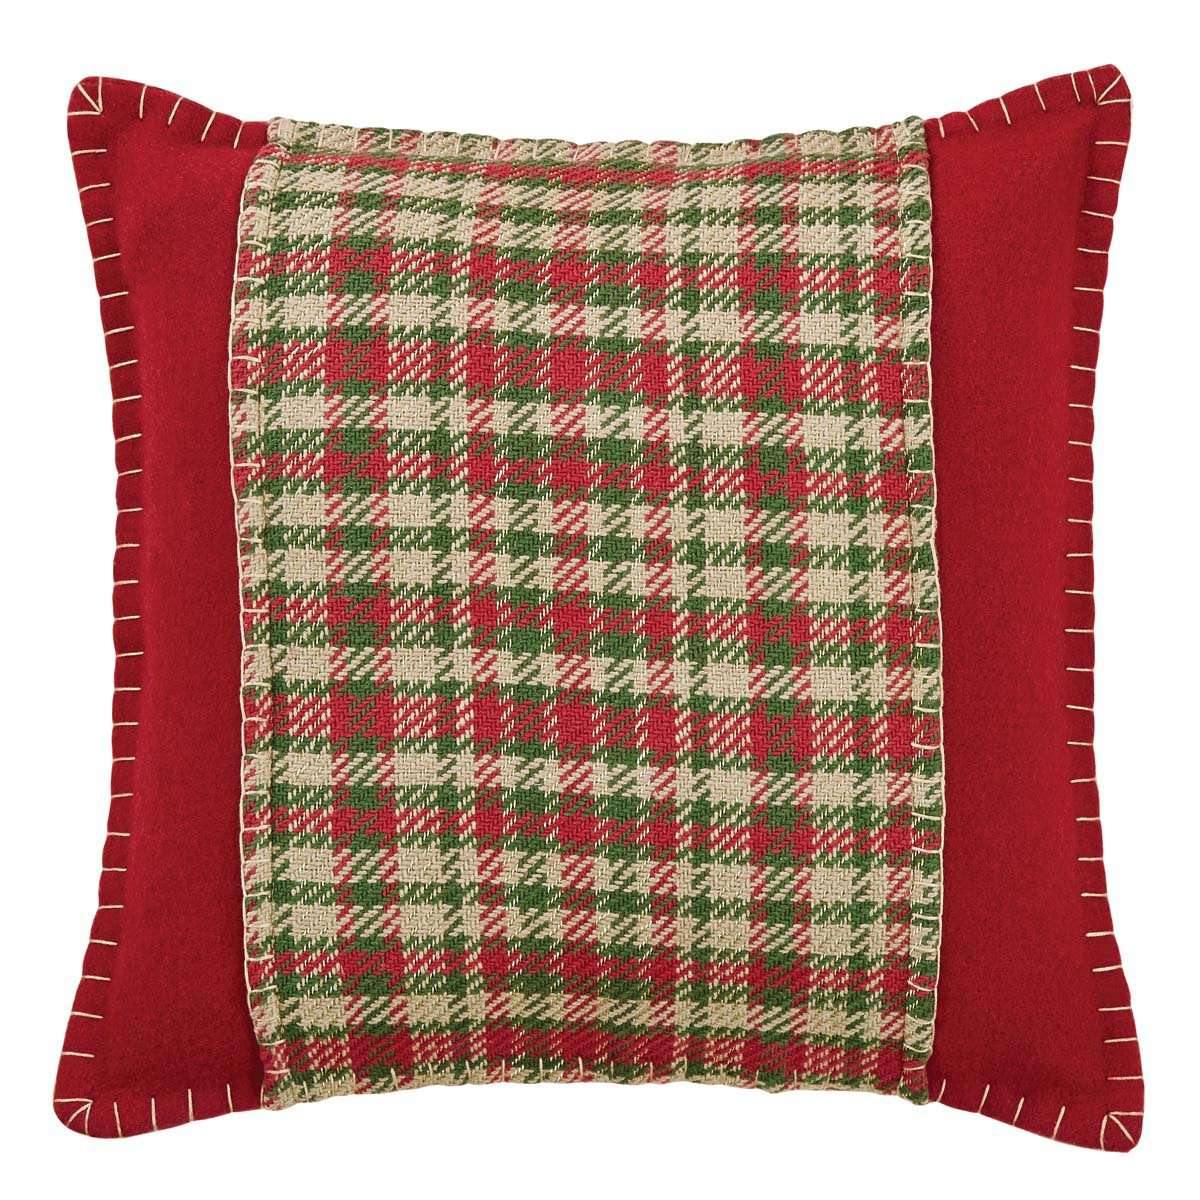 Claren Applique Pillow 16x16 - The Fox Decor